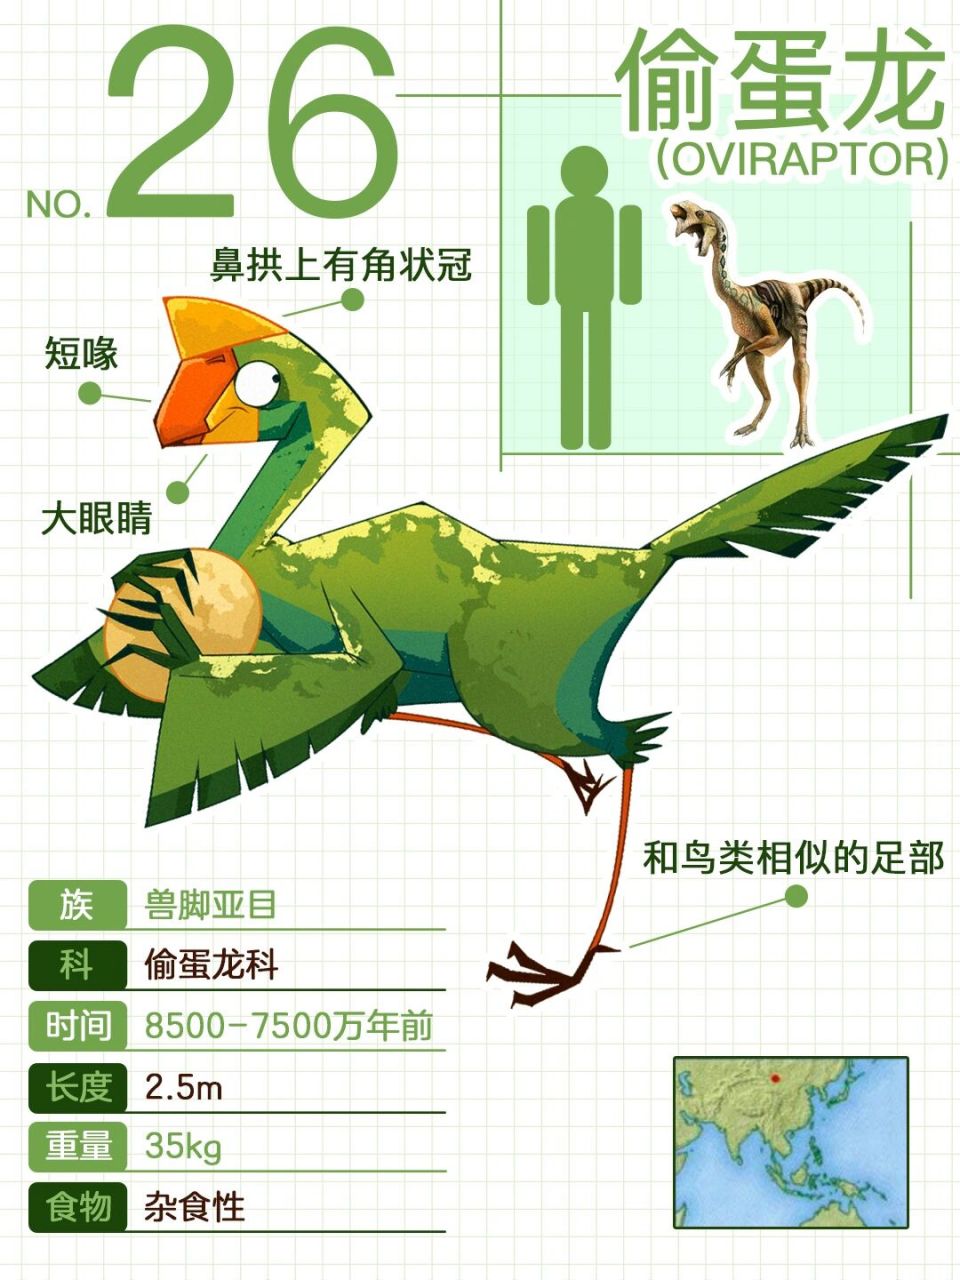 94 偷蛋龙 (oviraptor) 这种恐龙的拉丁名称是偷蛋的意思